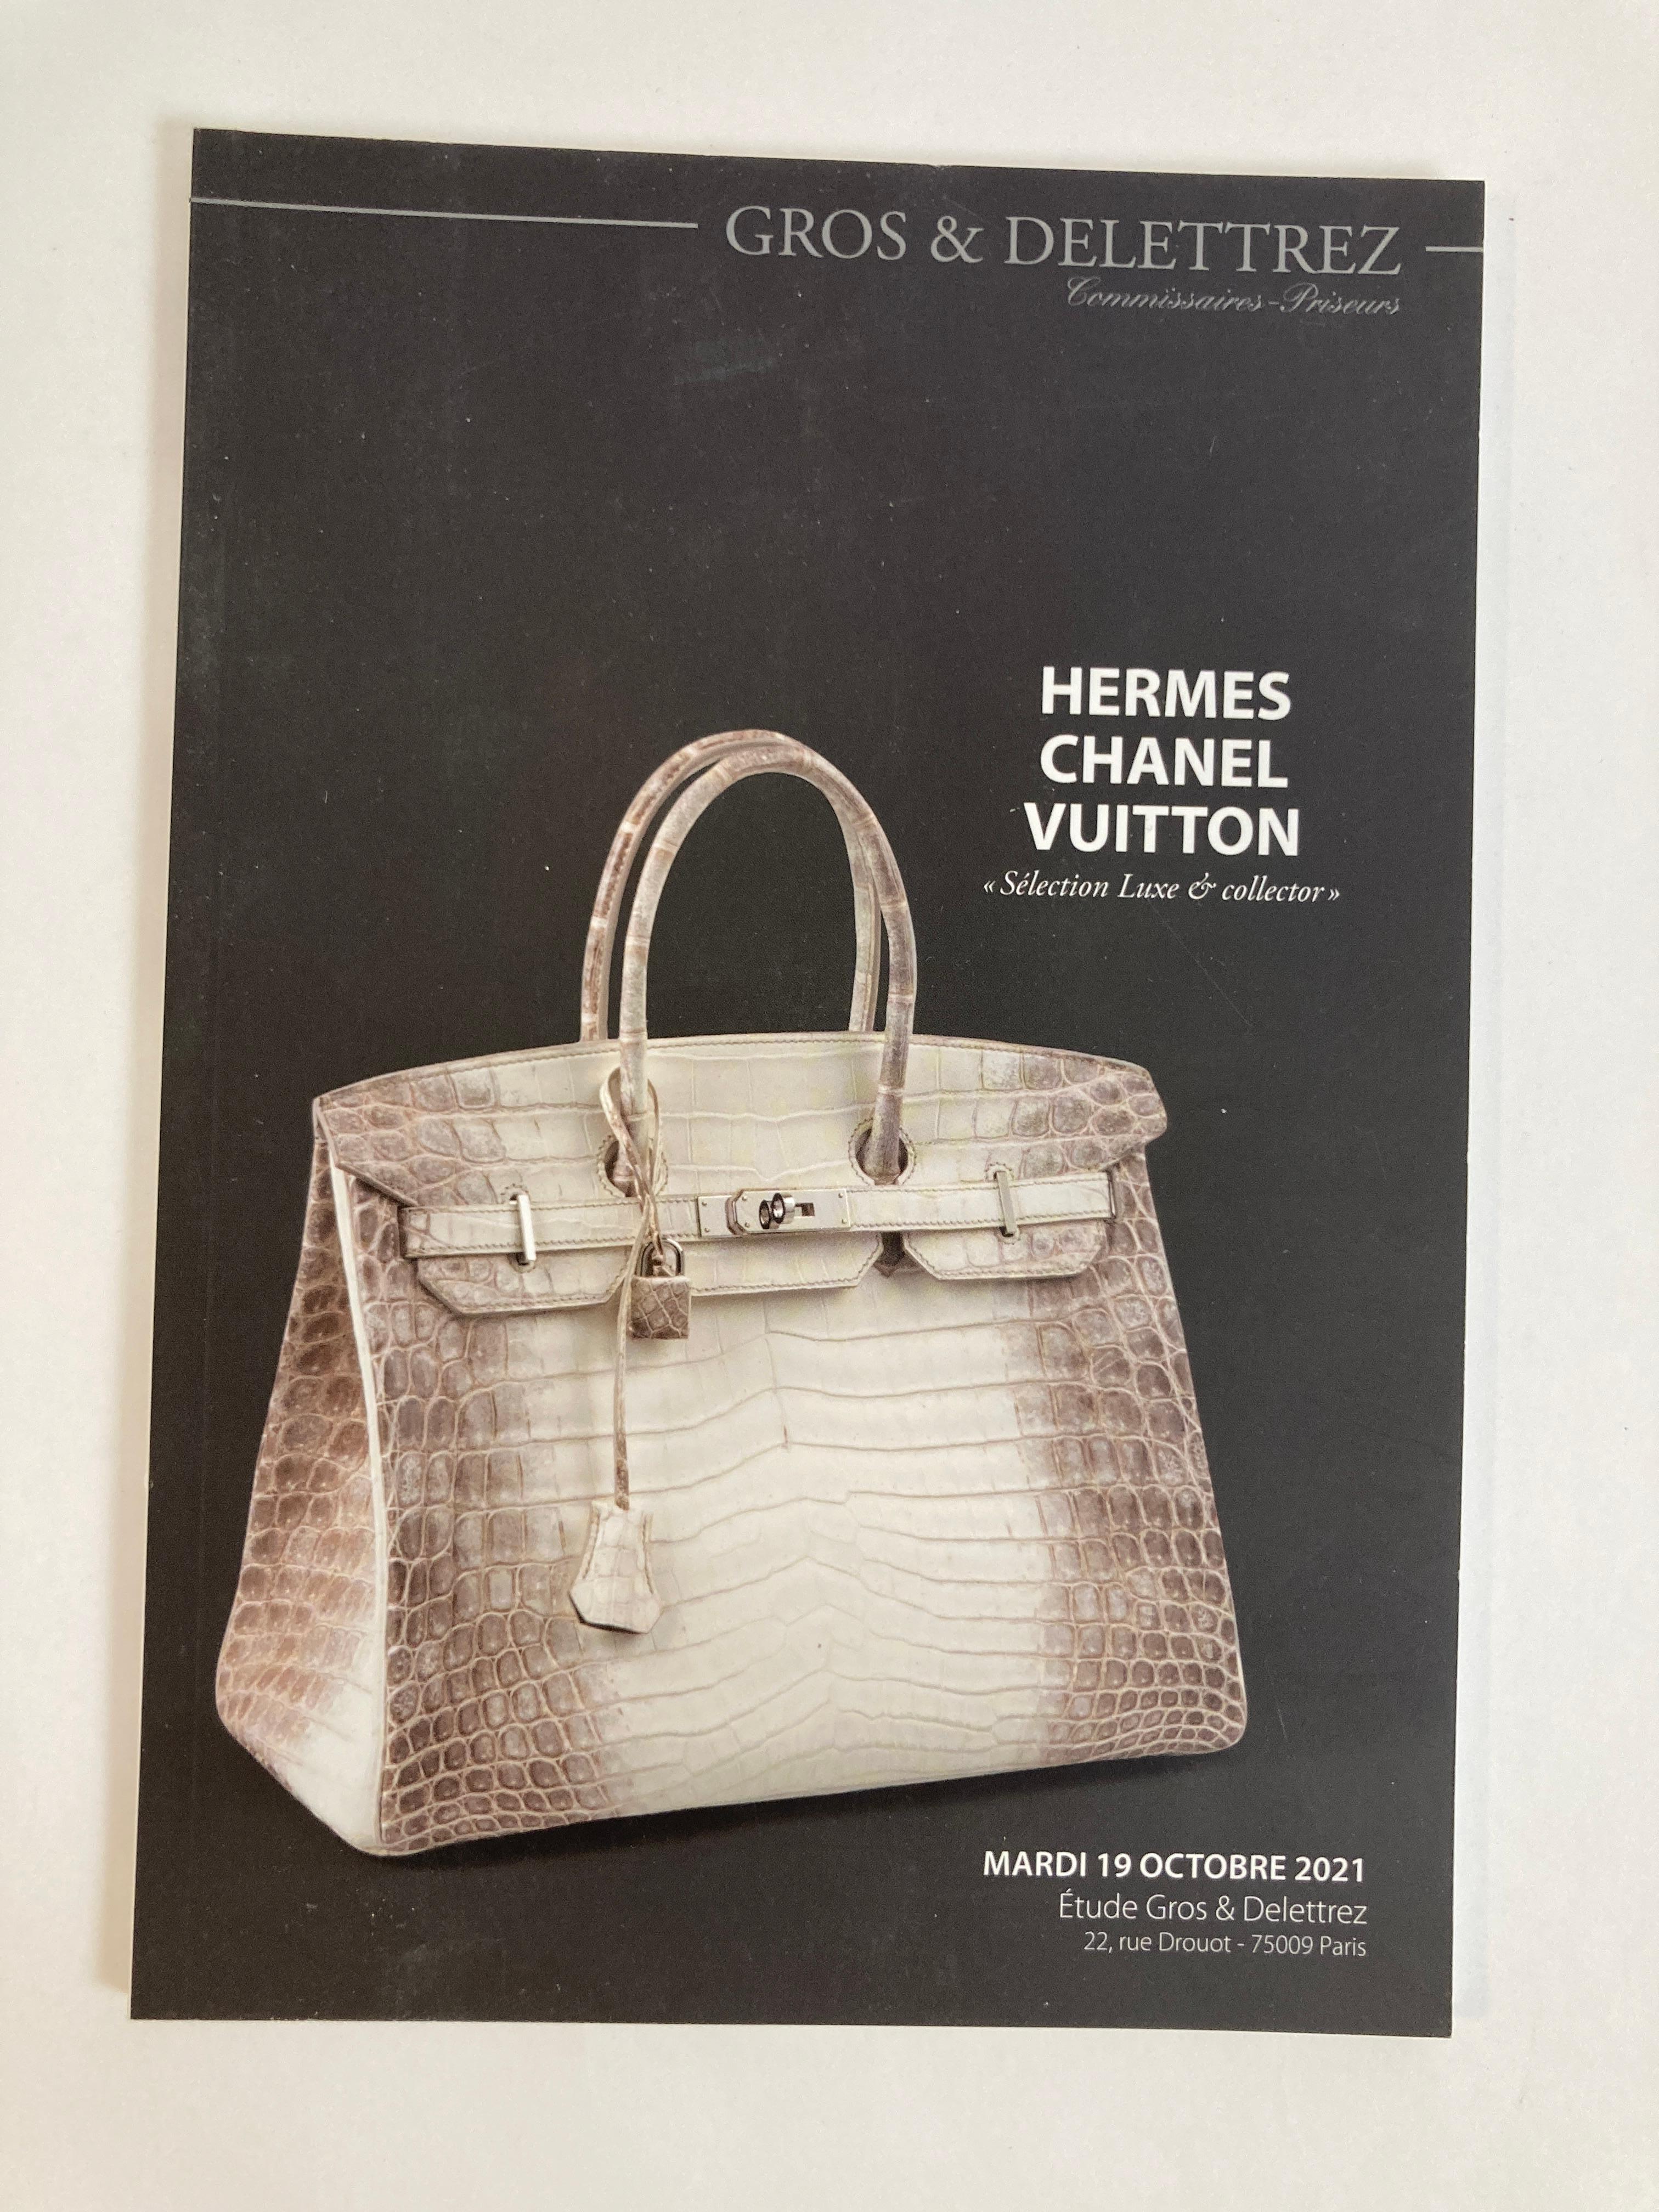 Hermes Chanel Vuitton Selection Luxe & Collector Auction Catalog 2021 by Gros & Delettrez Paris.
Paris Auction Catalog 2021 Published by Gros & Delettrez,
Hermes Chanel Vuitton Selection Luxe & Collector Auction Catalog 2021 Paris Auction